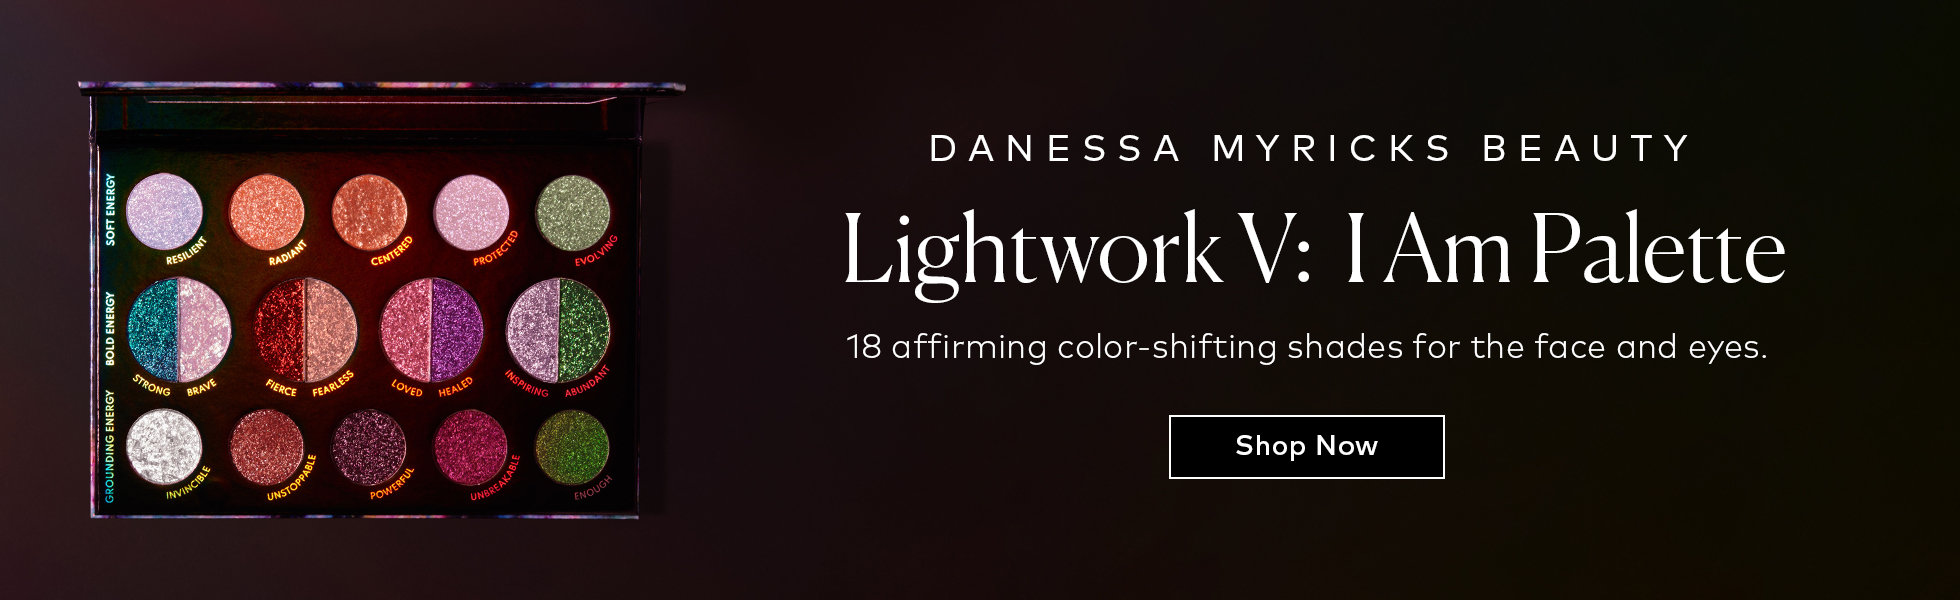 Shop the Danessa Myricks Beauty Lightwork V: I Am Palette on Beautylish.com!